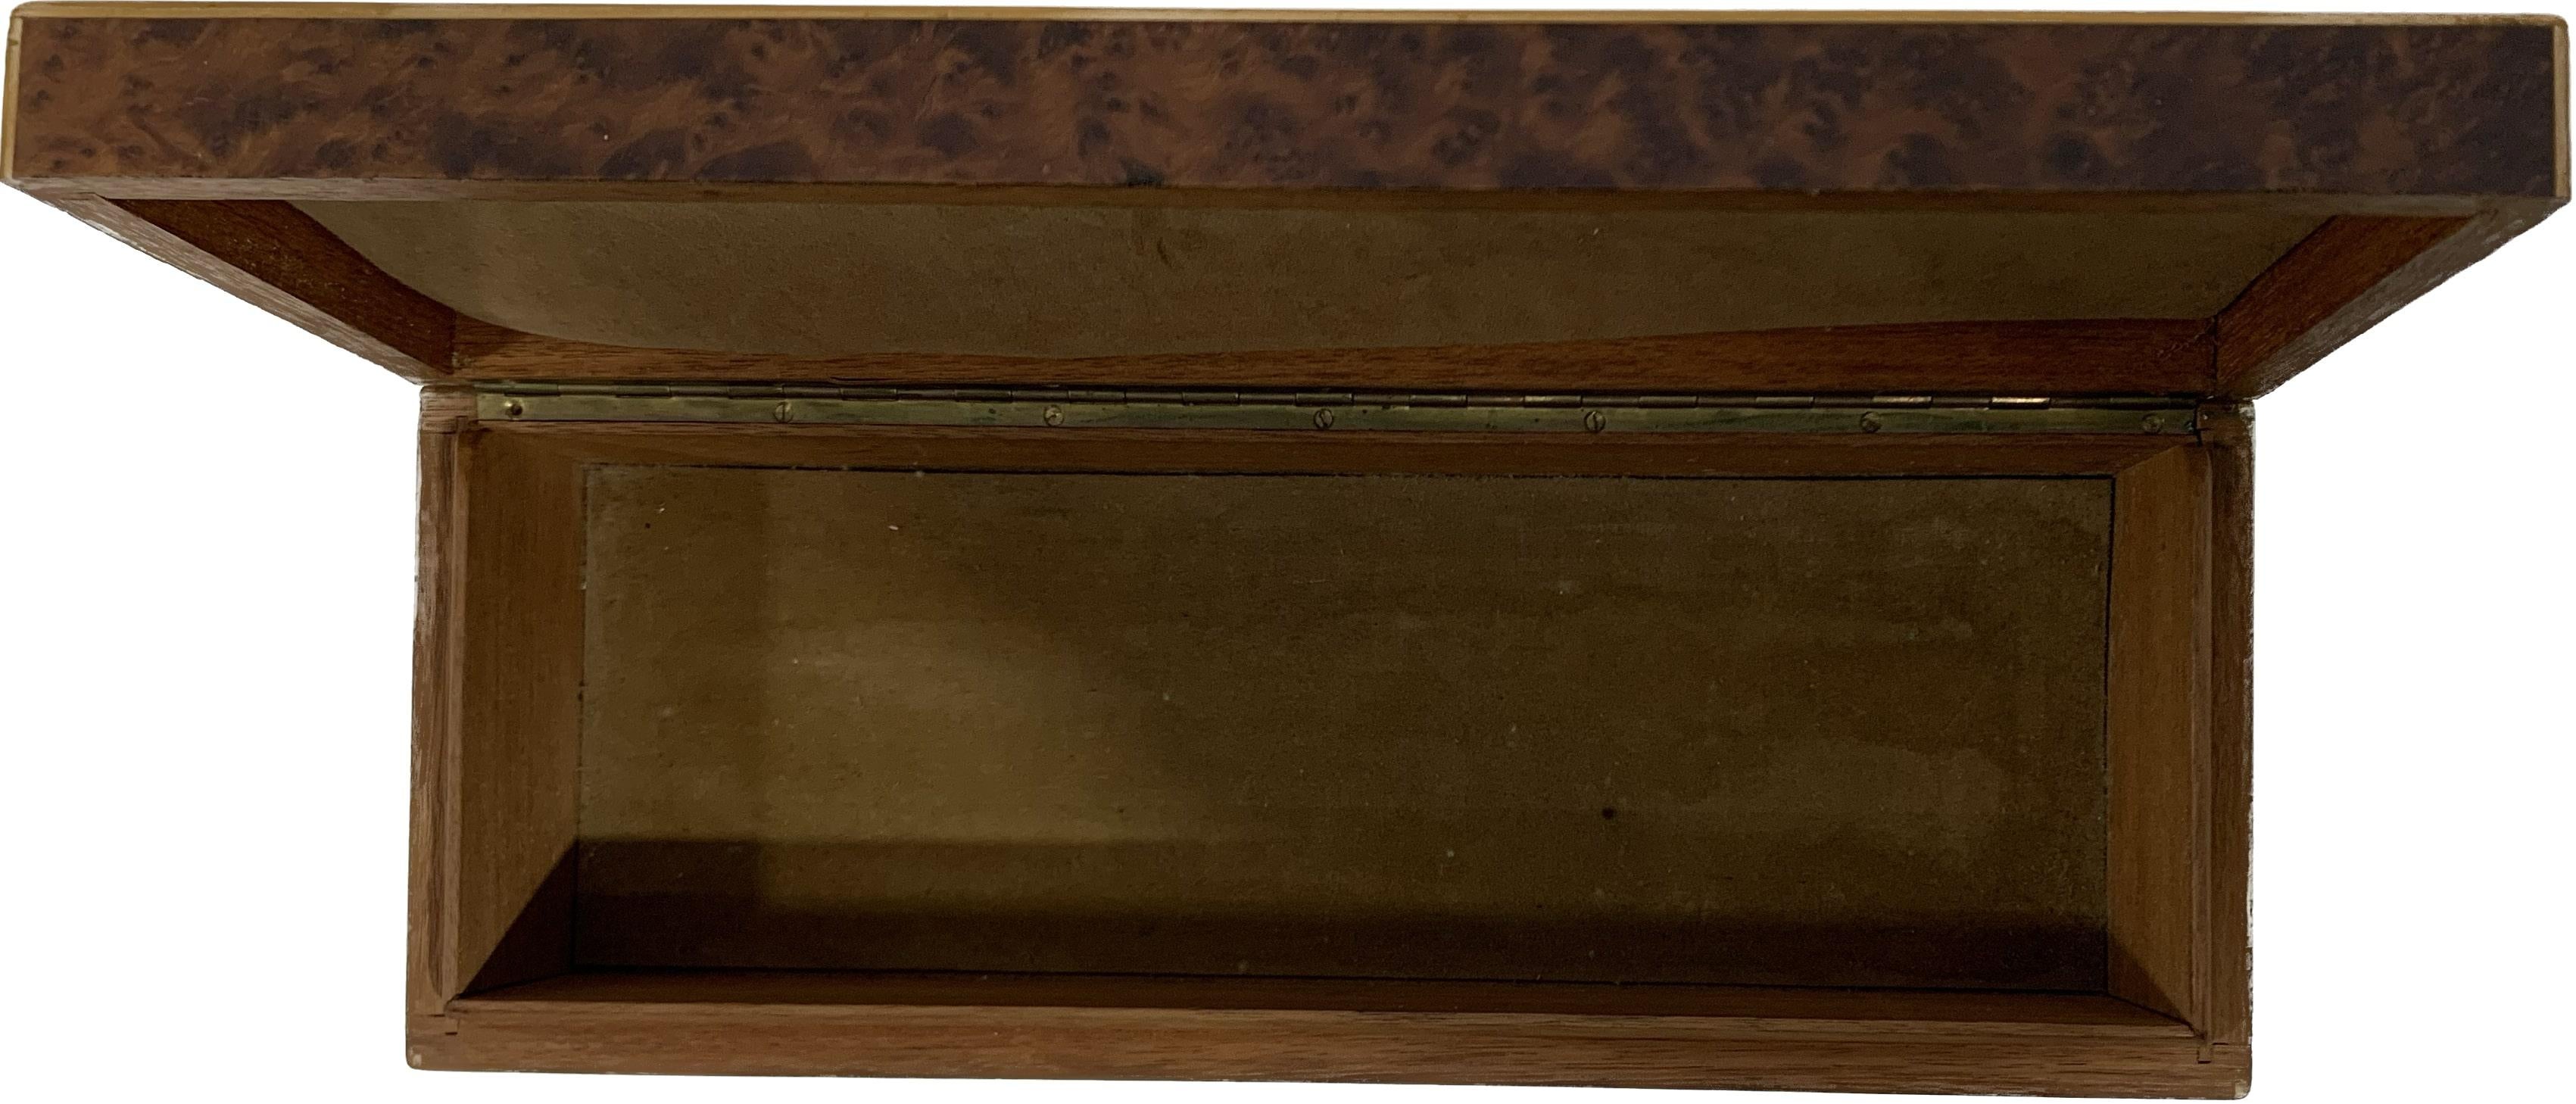 Boîte en bois du milieu du 20e siècle, directement issue de la période Art Déco et fabriquée à l'origine en Europe, en France. La technique utilisée est celle de la marqueterie avec des incrustations polychromes de différents bois comme le bois de